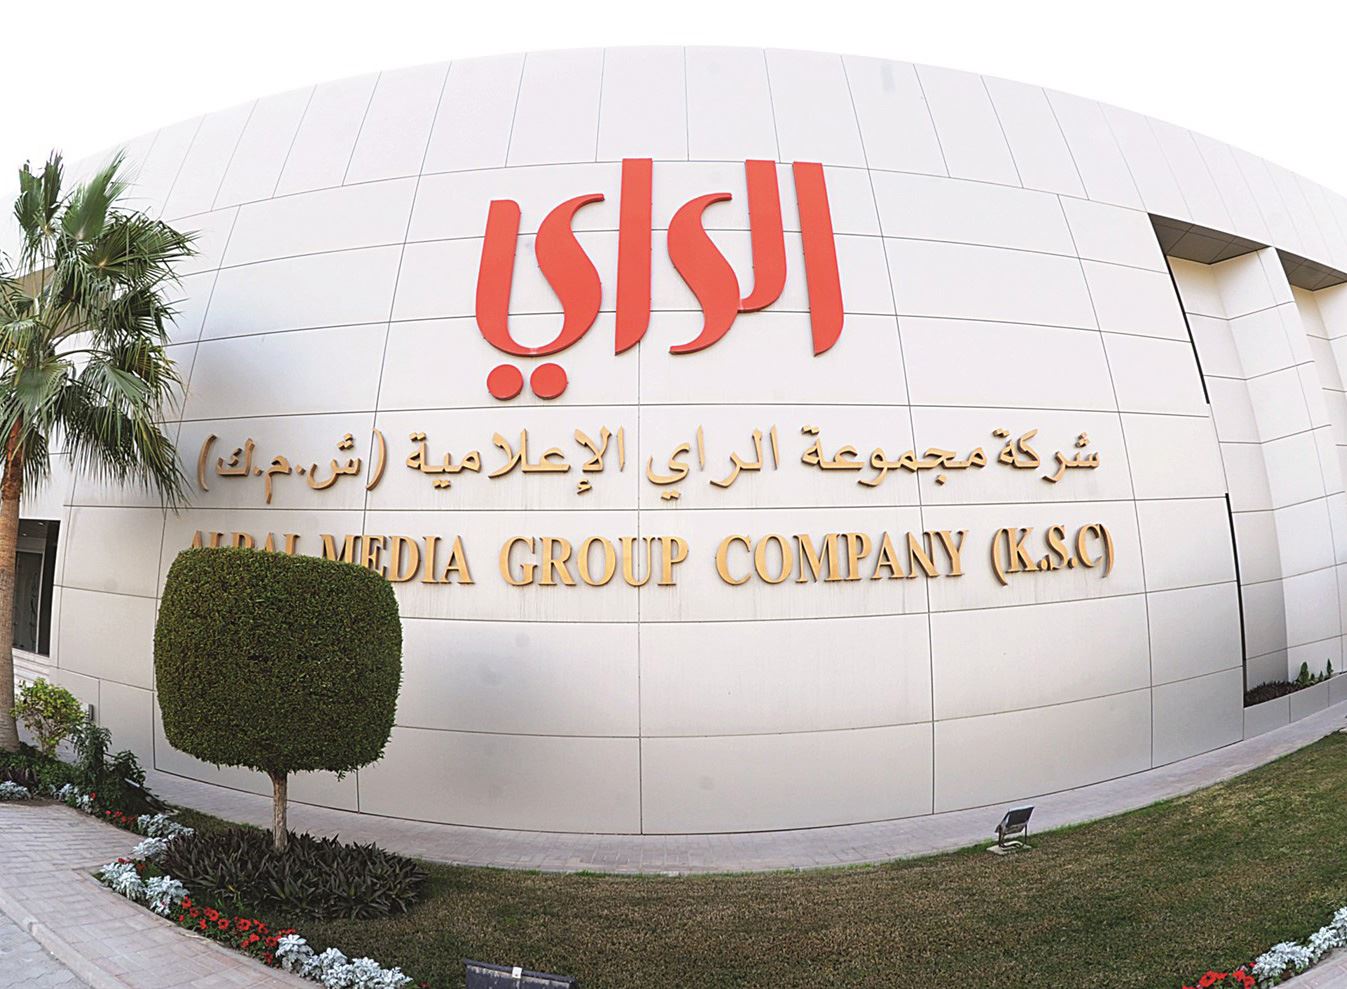 تردد قناة الراي الكويتية للمنوعات على النايل سات 2020